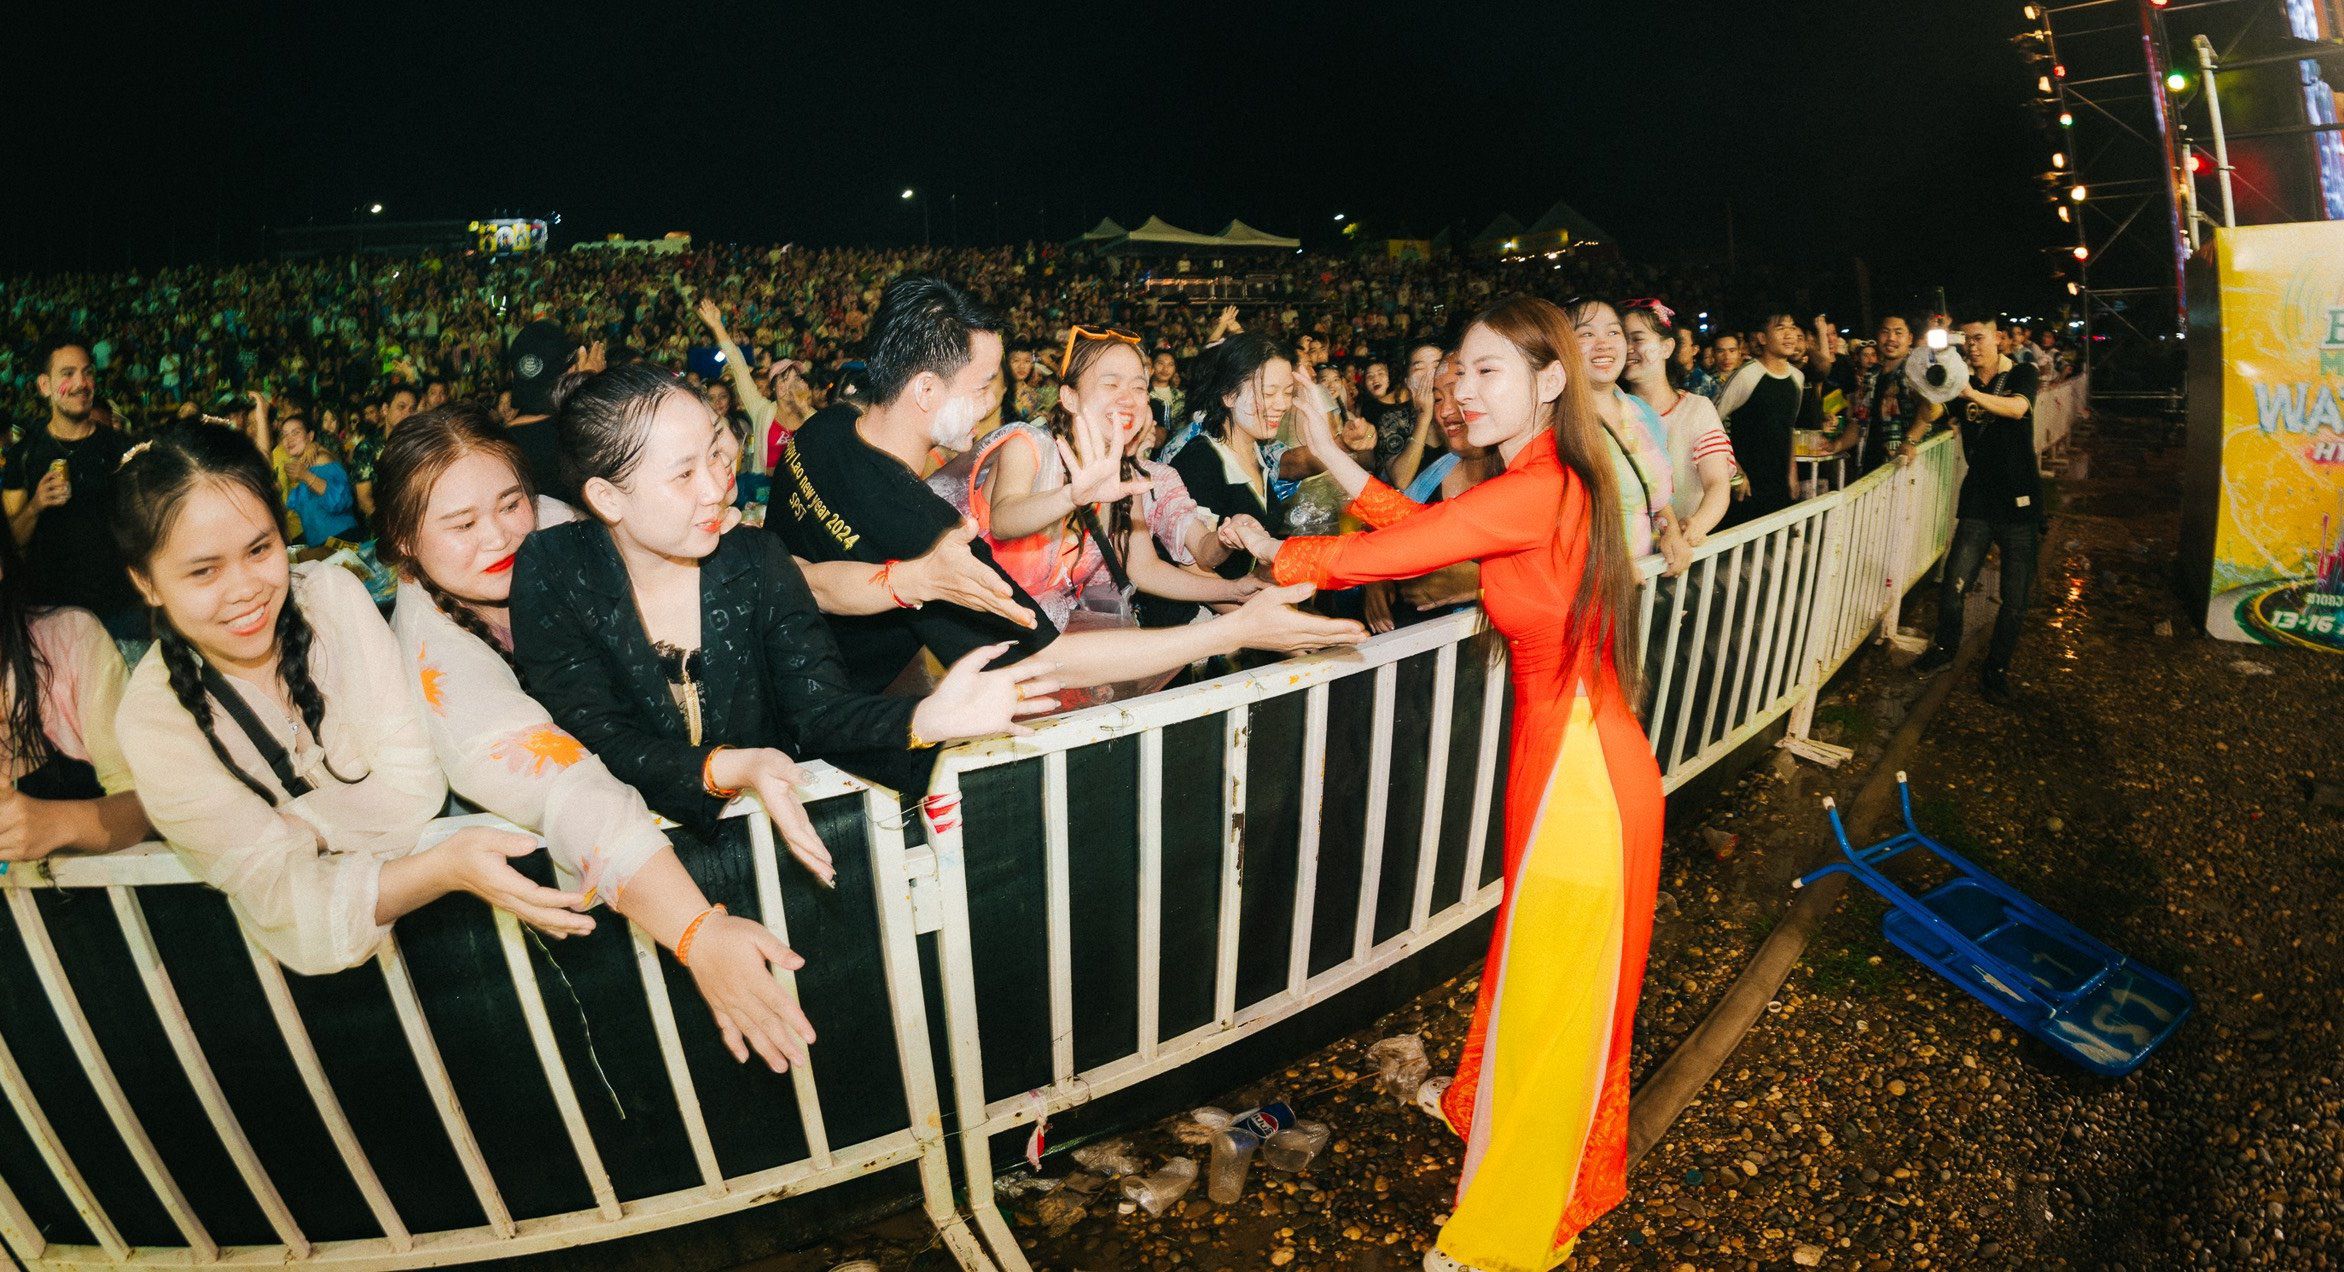 Nữ DJ miền Tây mặc áo dài biểu diễn trước 10 nghìn người ở Lào gây "sốt" - 2